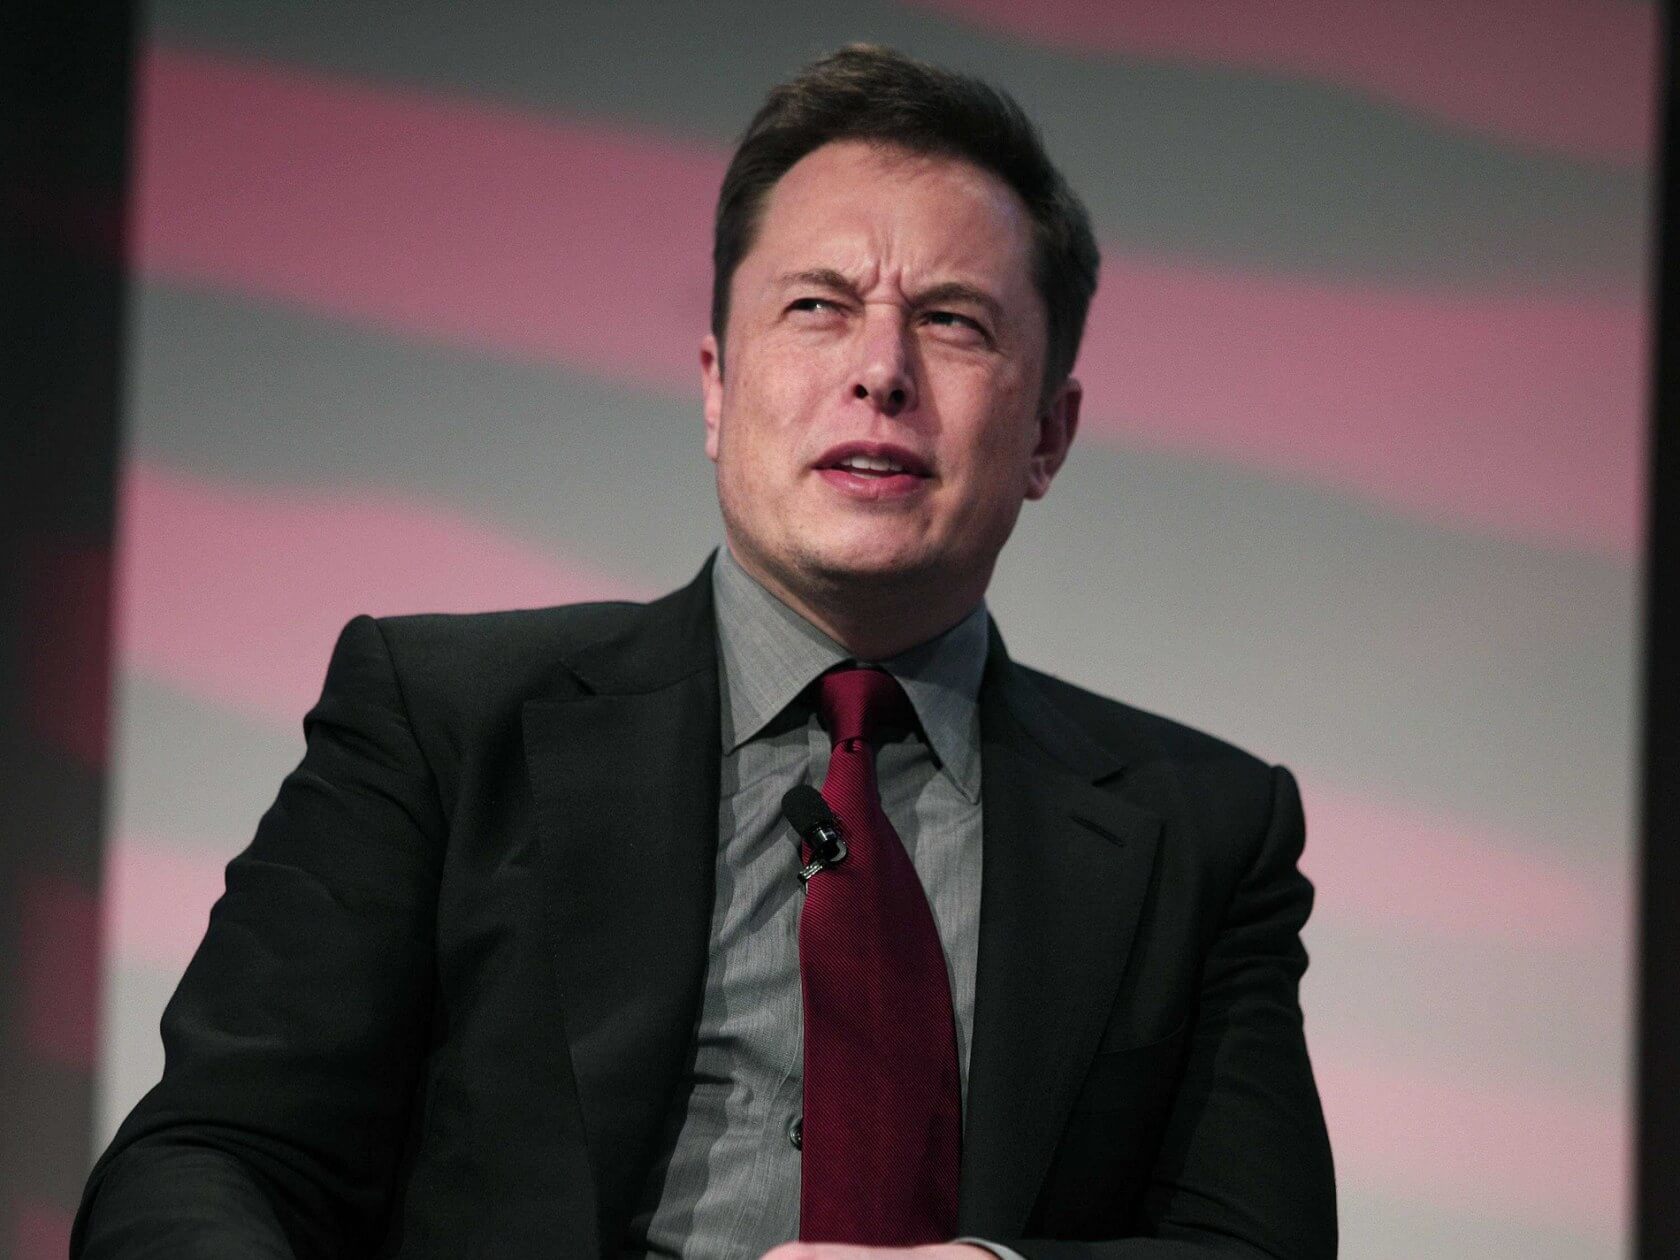 Un juez anula el paquete salarial de Tesla de 56 mil millones de dólares de Elon Musk, amenazando su posición como la persona más rica del mundo